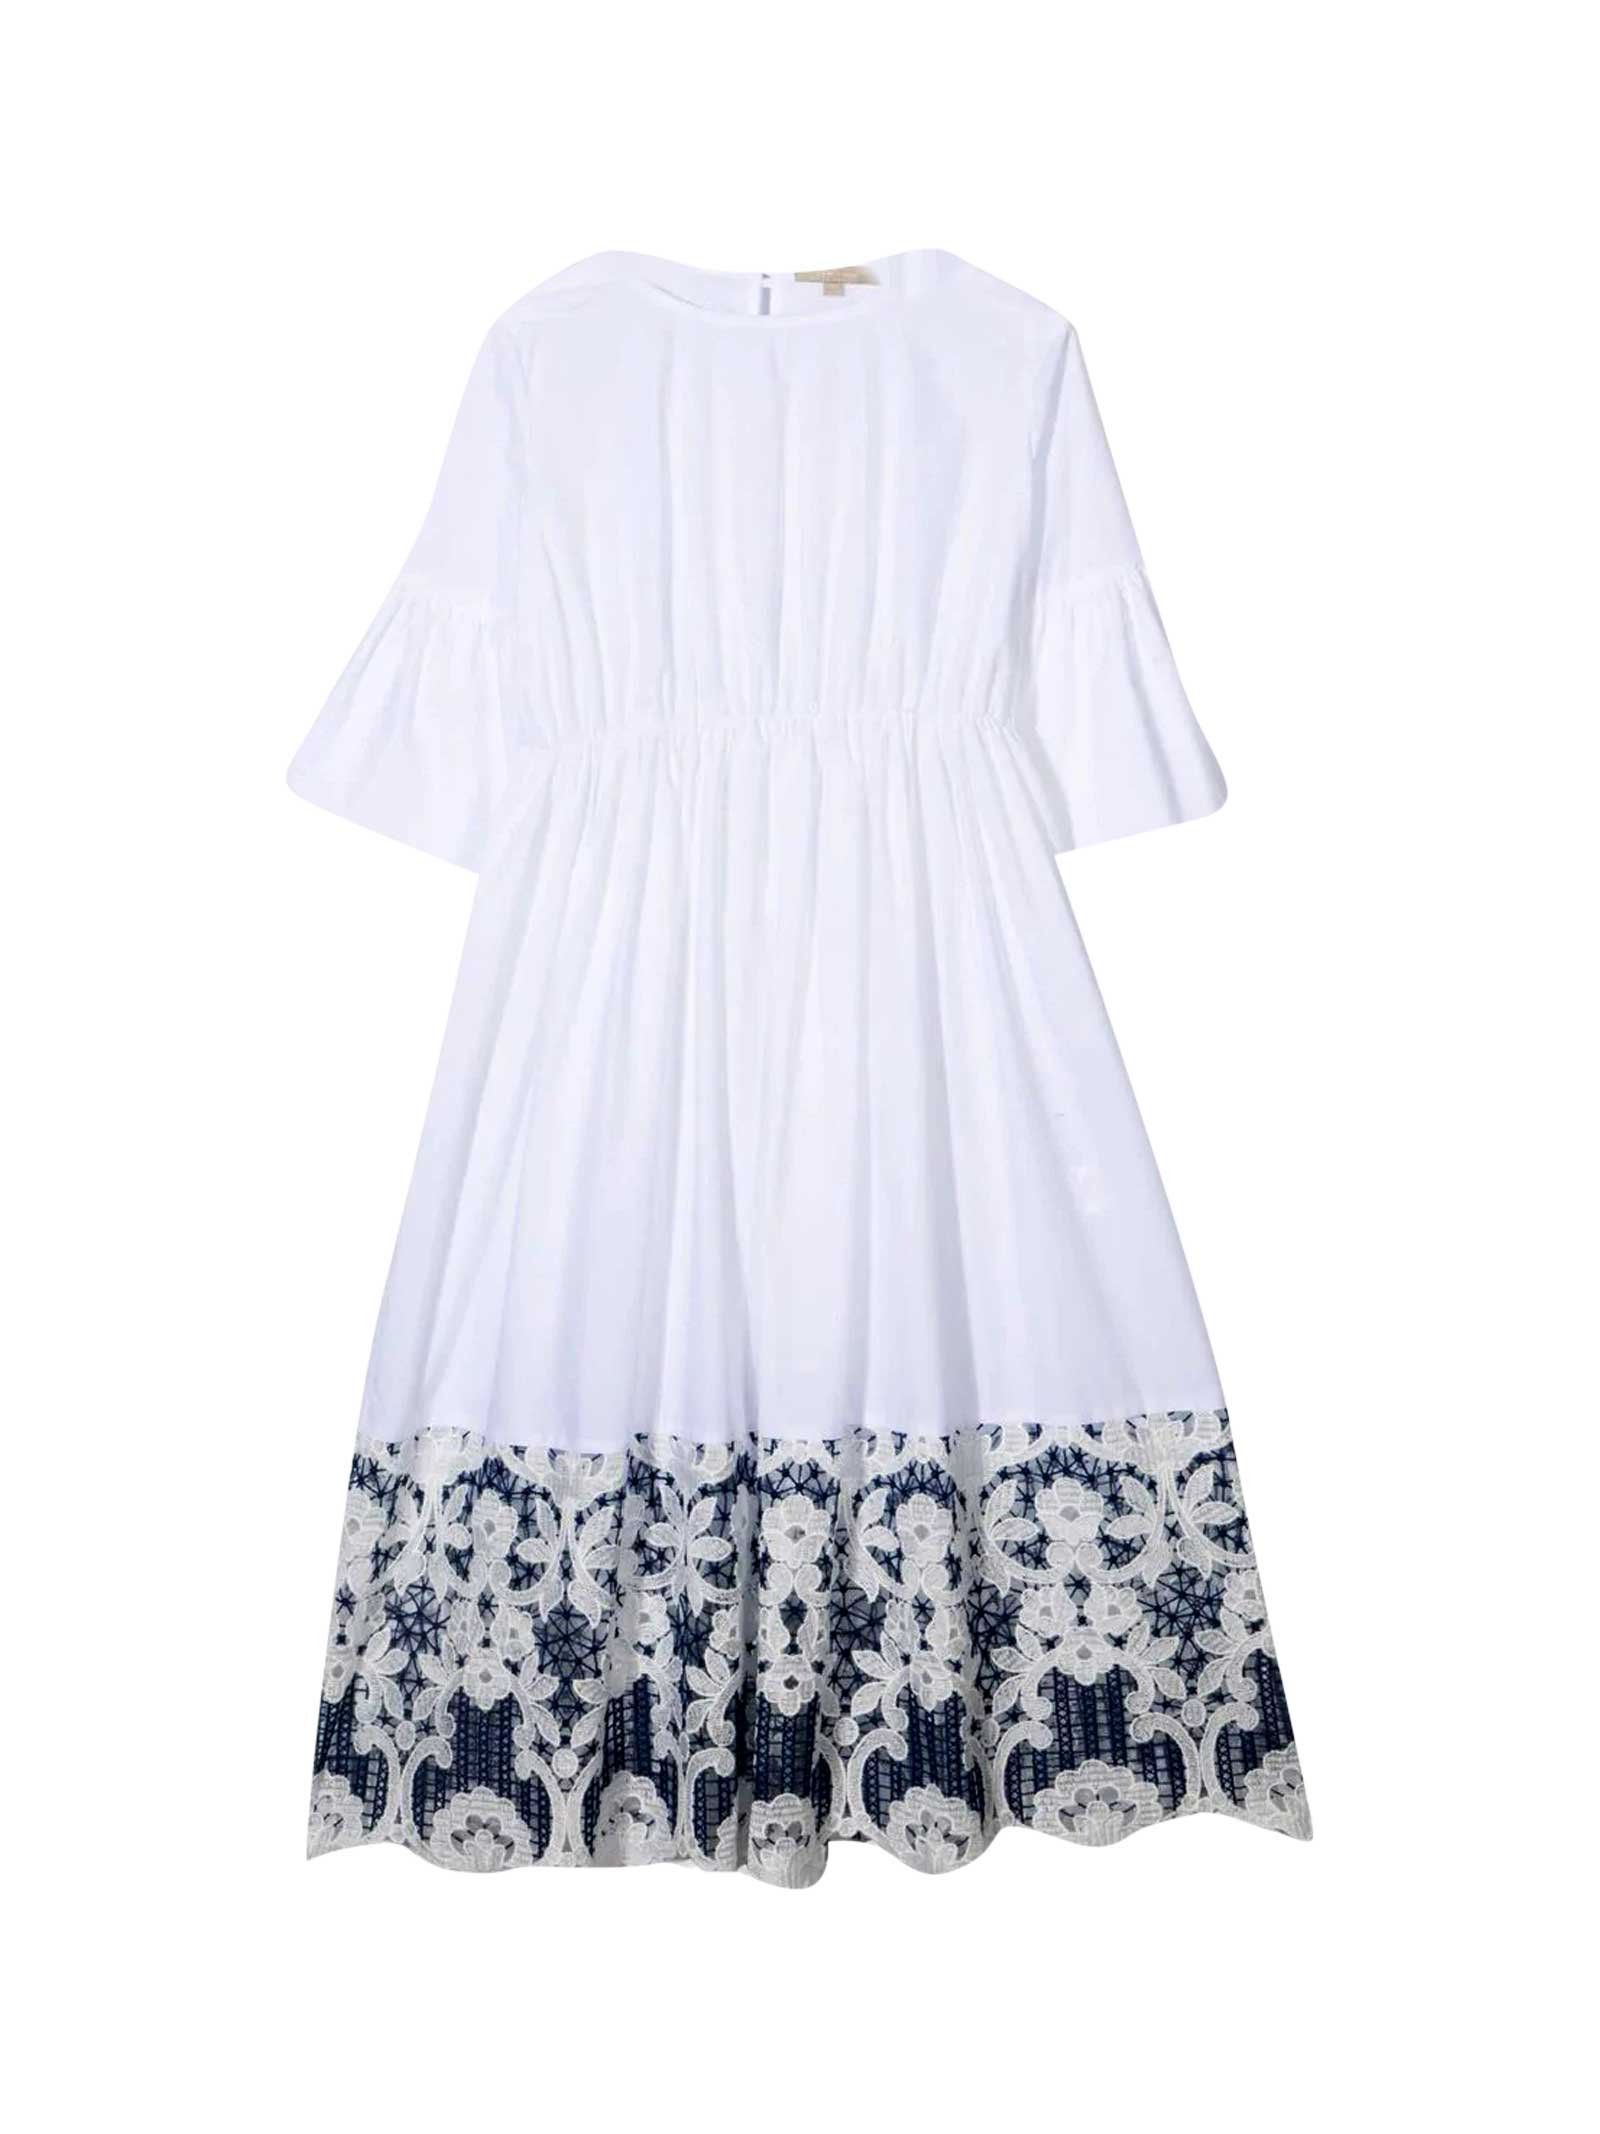 Elie Saab White Pleated Dress